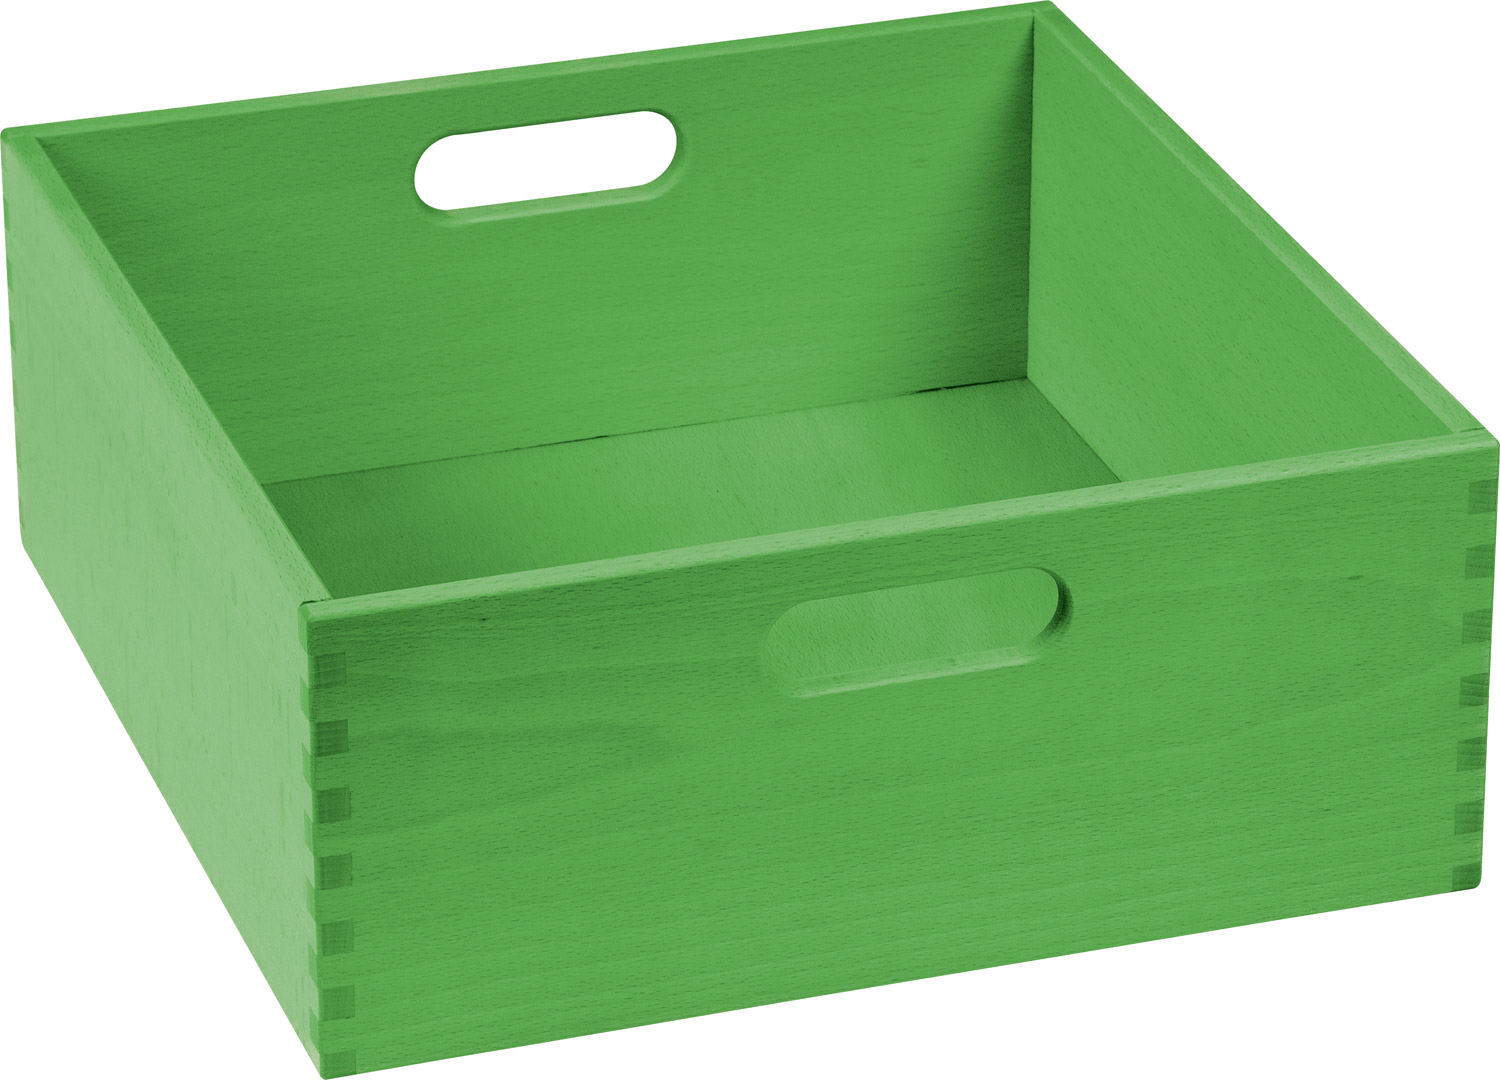 Materialkasten extra breit, 14 cm hoch grün